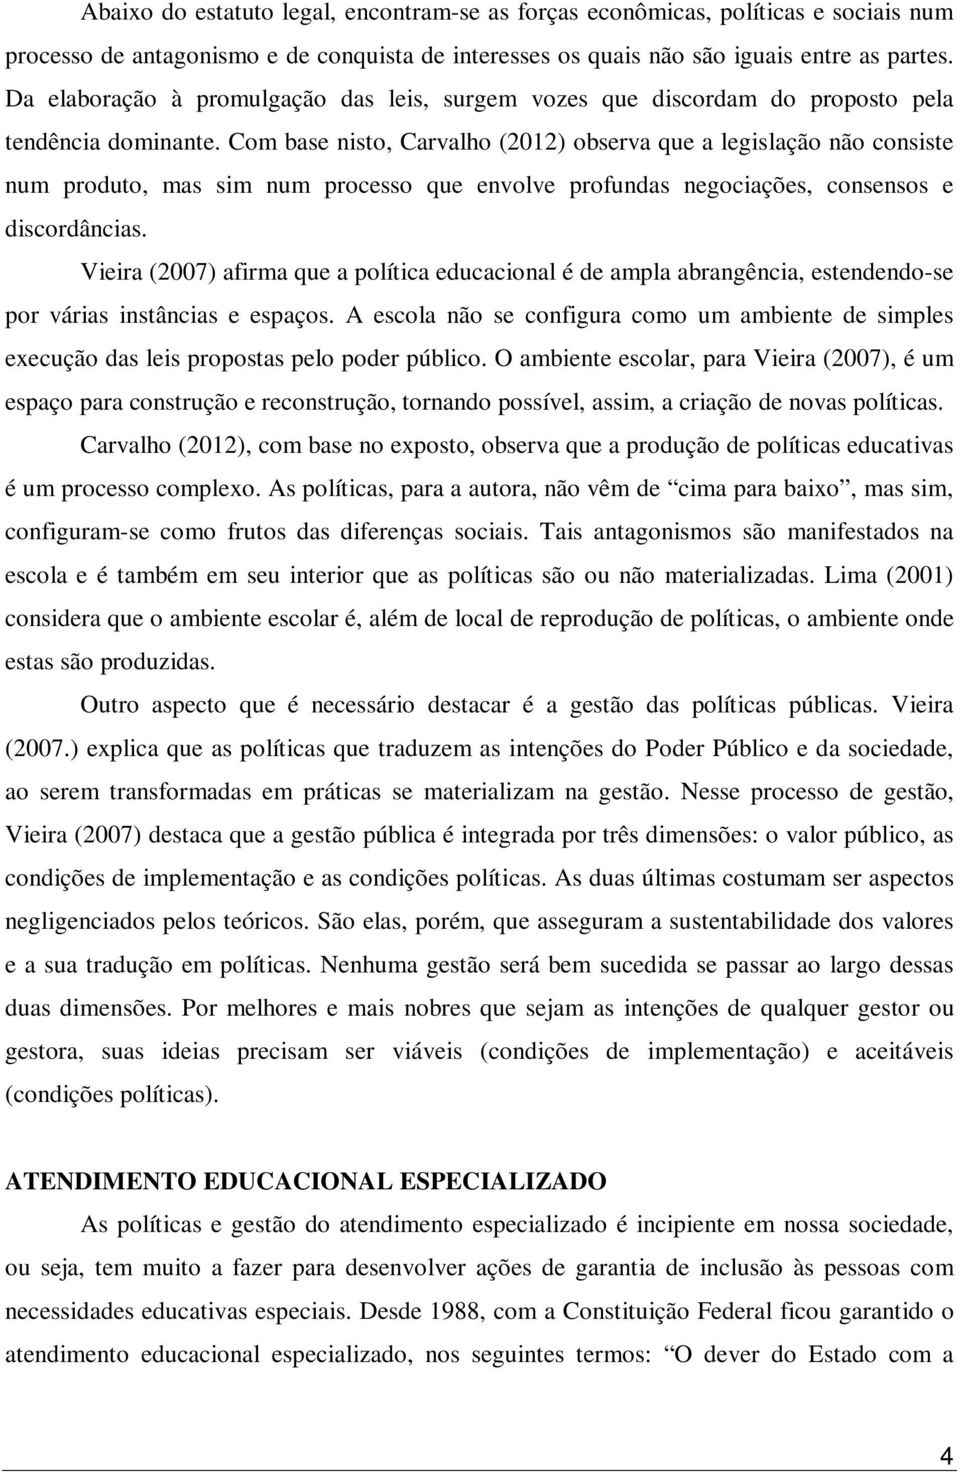 Com base nisto, Carvalho (2012) observa que a legislação não consiste num produto, mas sim num processo que envolve profundas negociações, consensos e discordâncias.